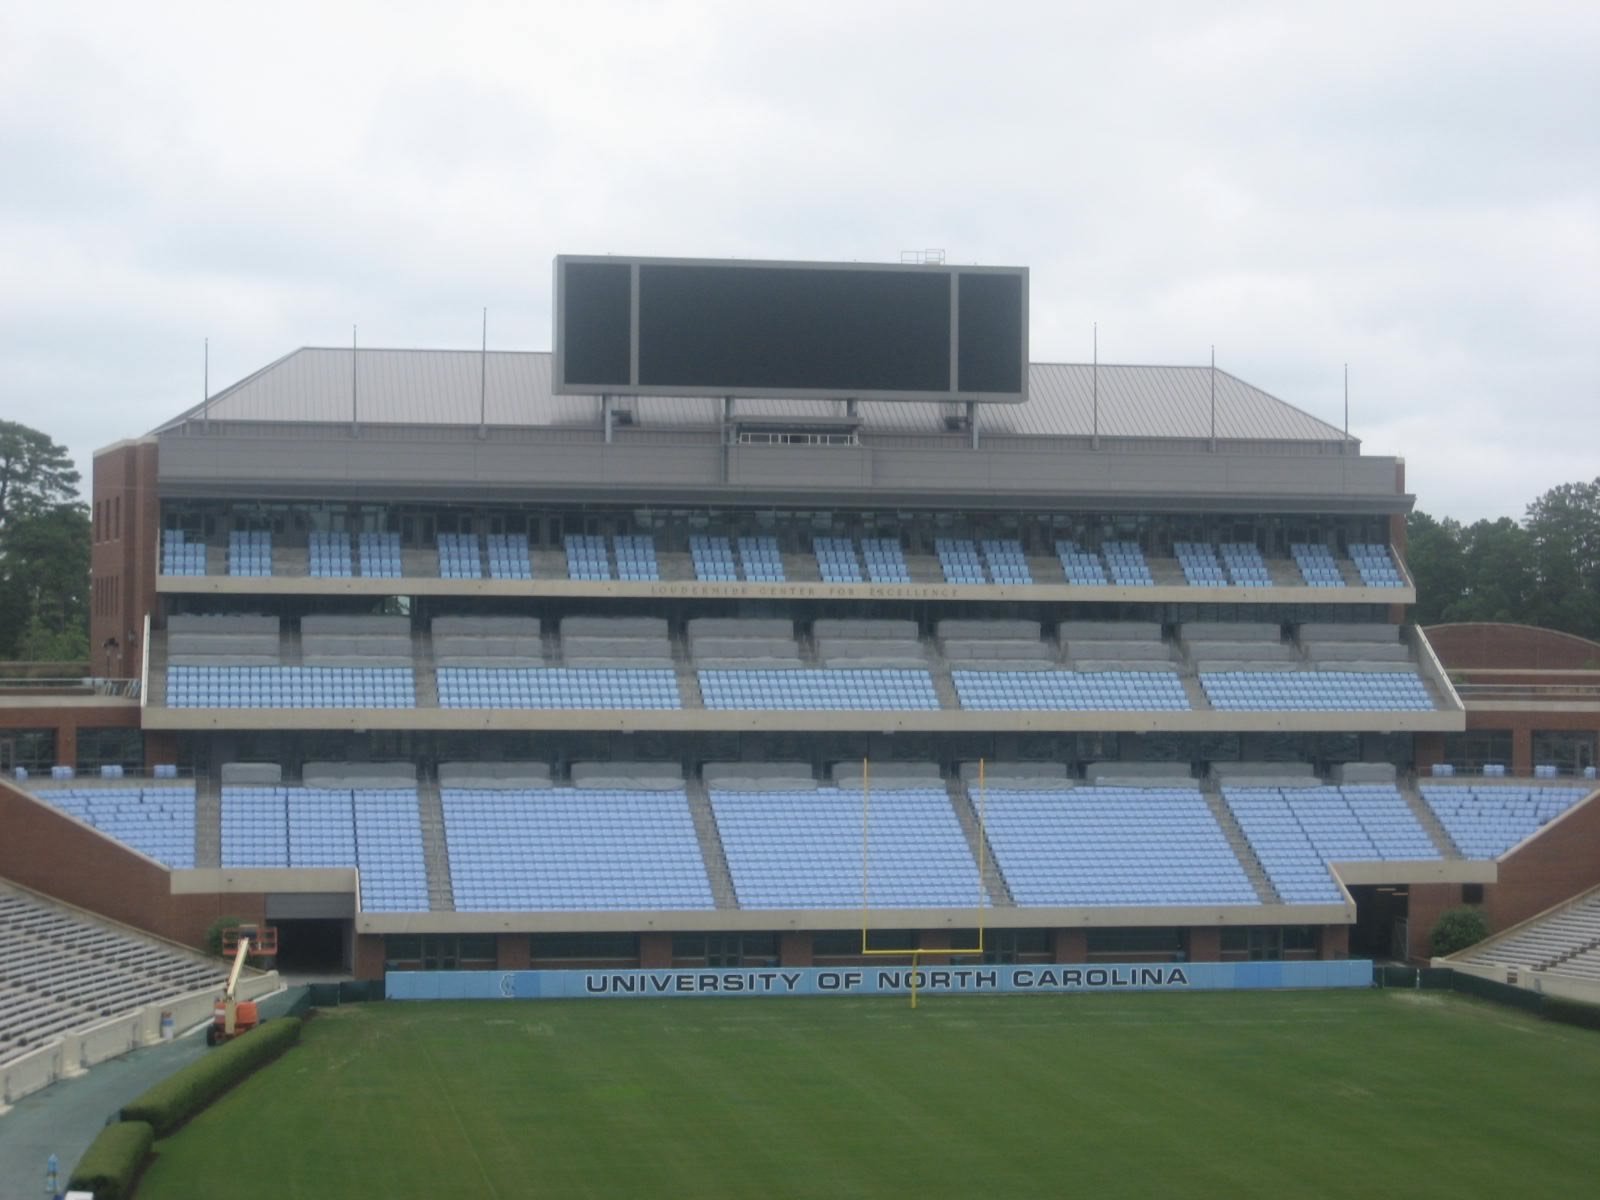 blue zone seating kenan memorial stadium